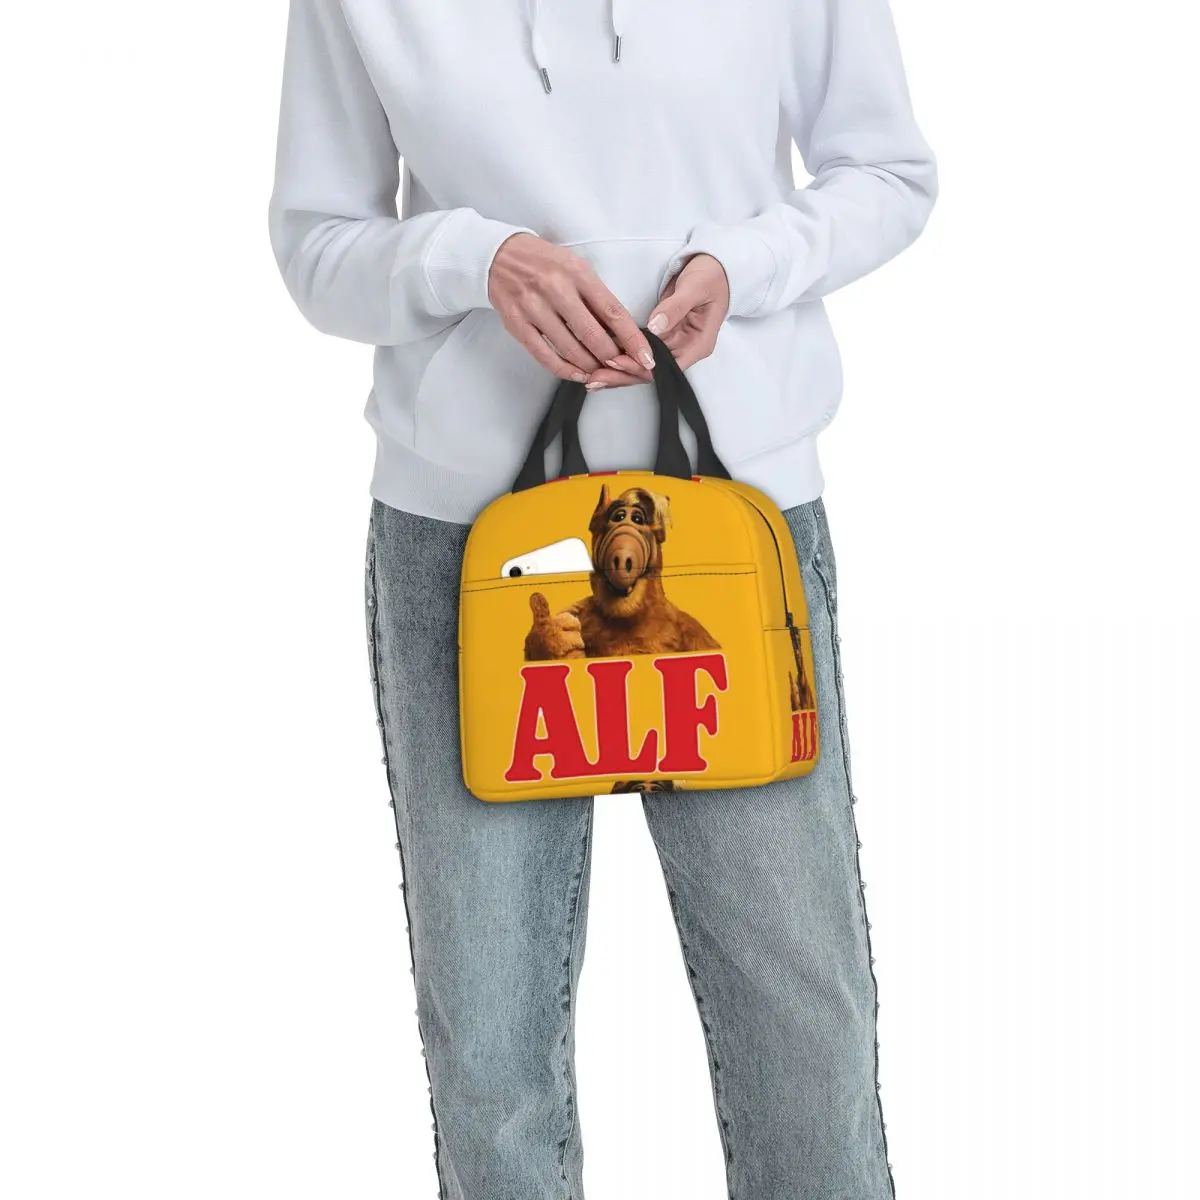 Alf Thumbs Up Lunch Bag Cooler Термоизолированный Ланч-Бокс Инопланетной Формы Жизни для Женщин, Детей, Школьной Работы, Пикника, Еды, Сумки-Тоут Изображение 5